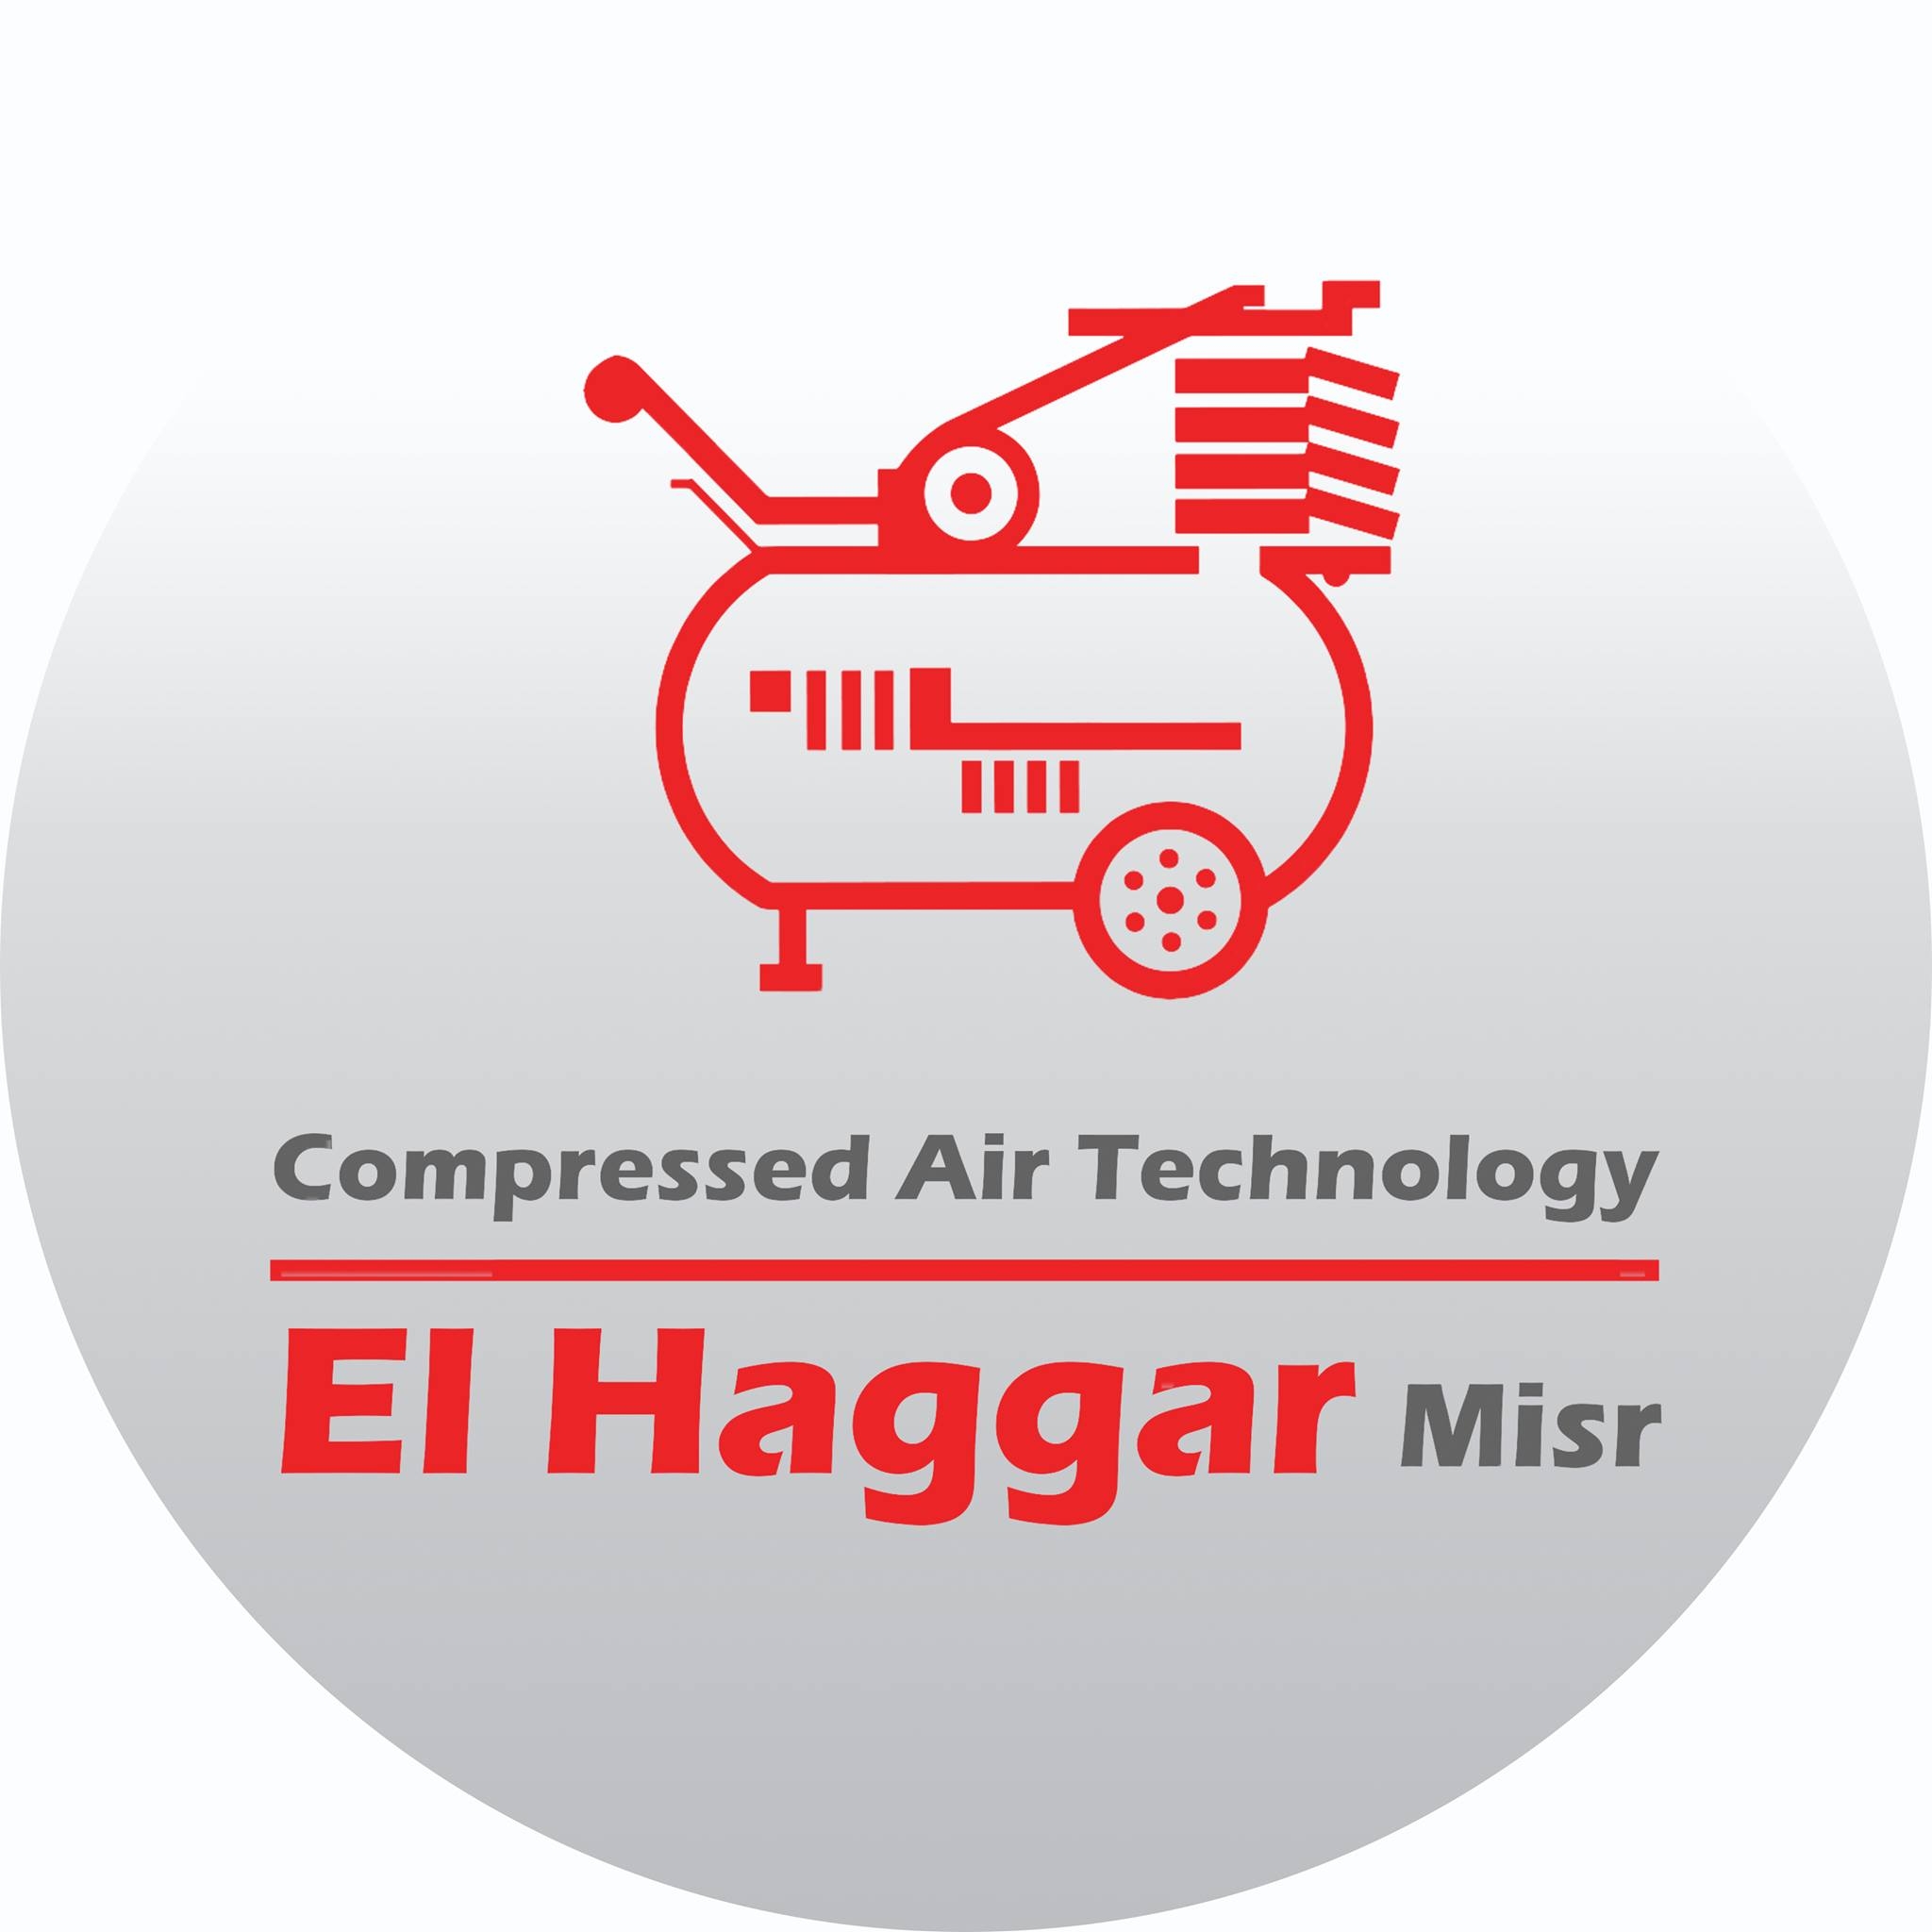 Elhaggar Misr